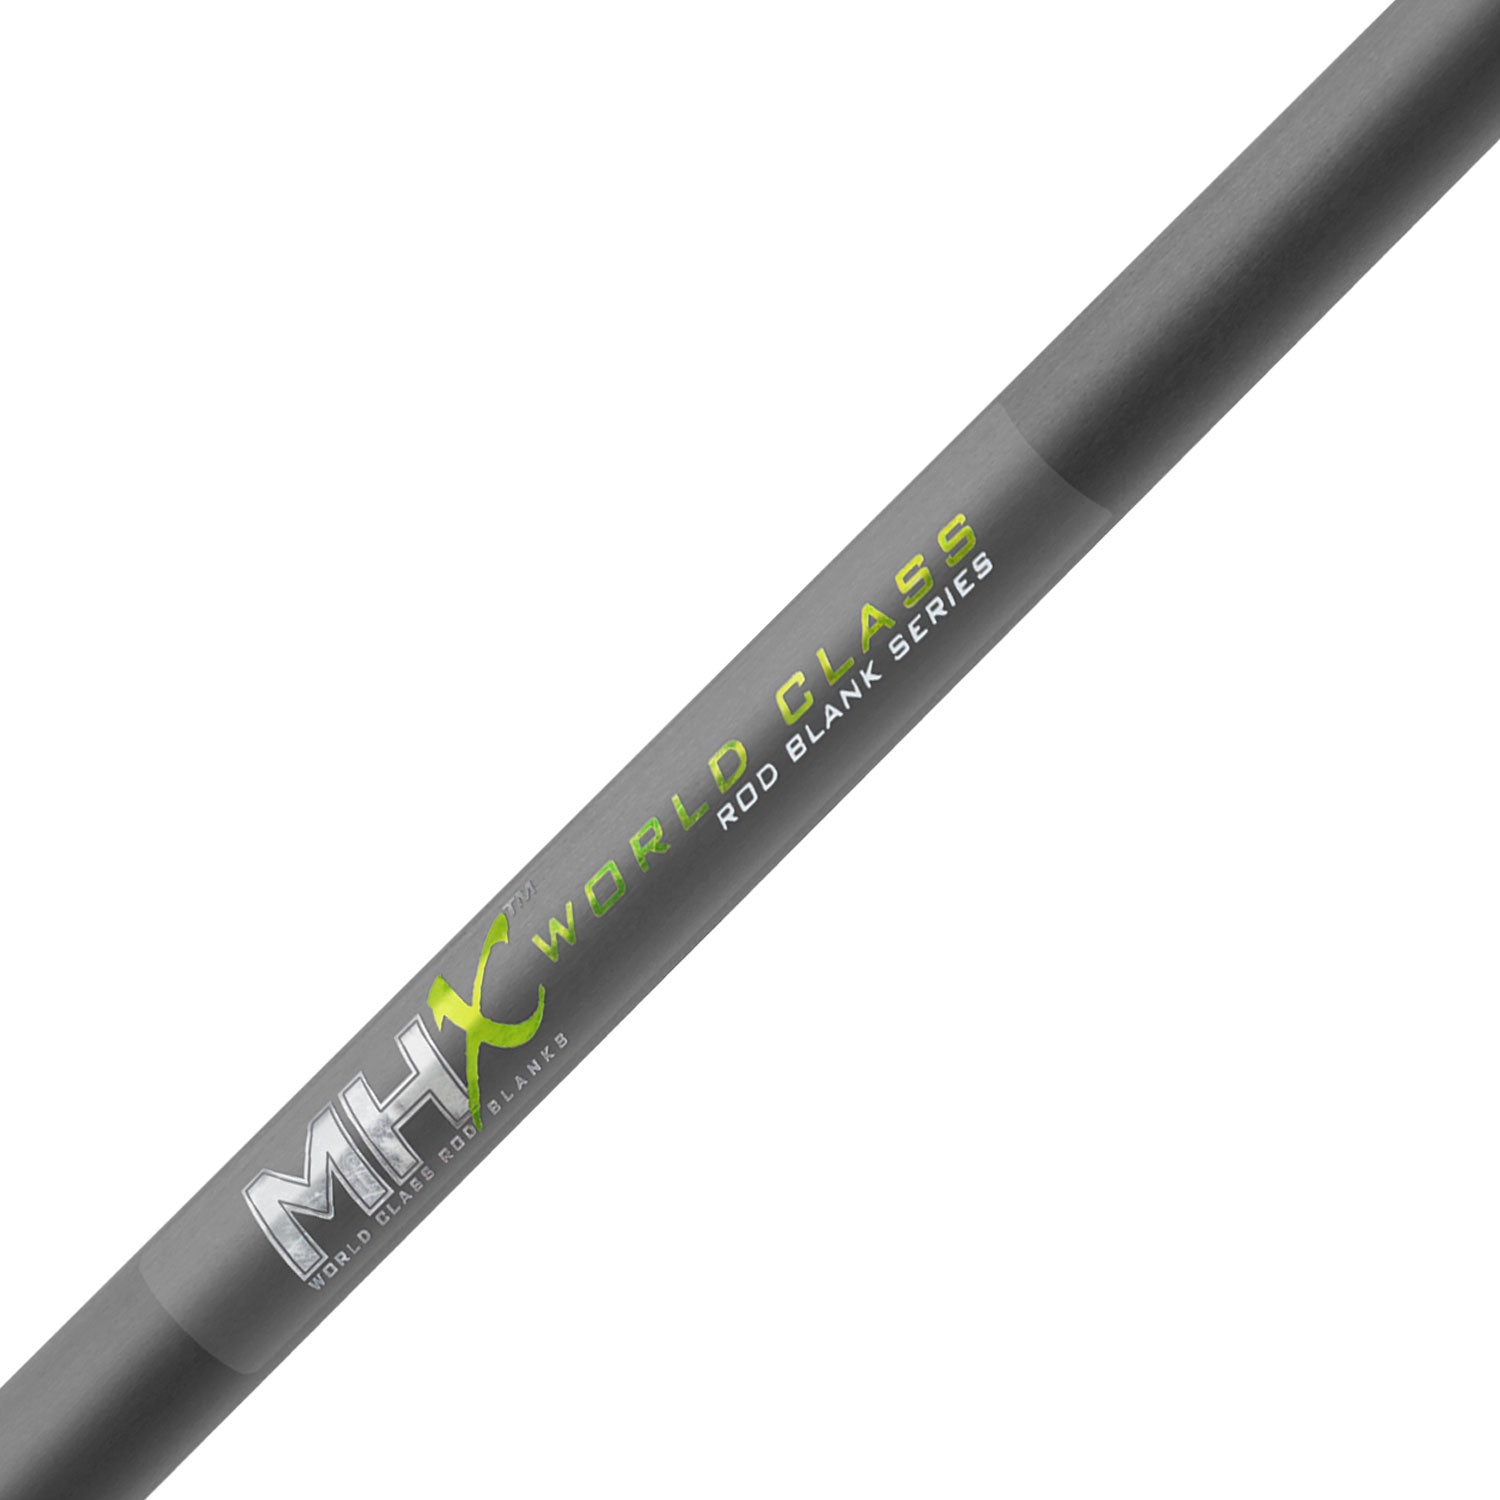 MHX 8'0" Med-Light Hot Shot Rod Blank - HS9600-MHX